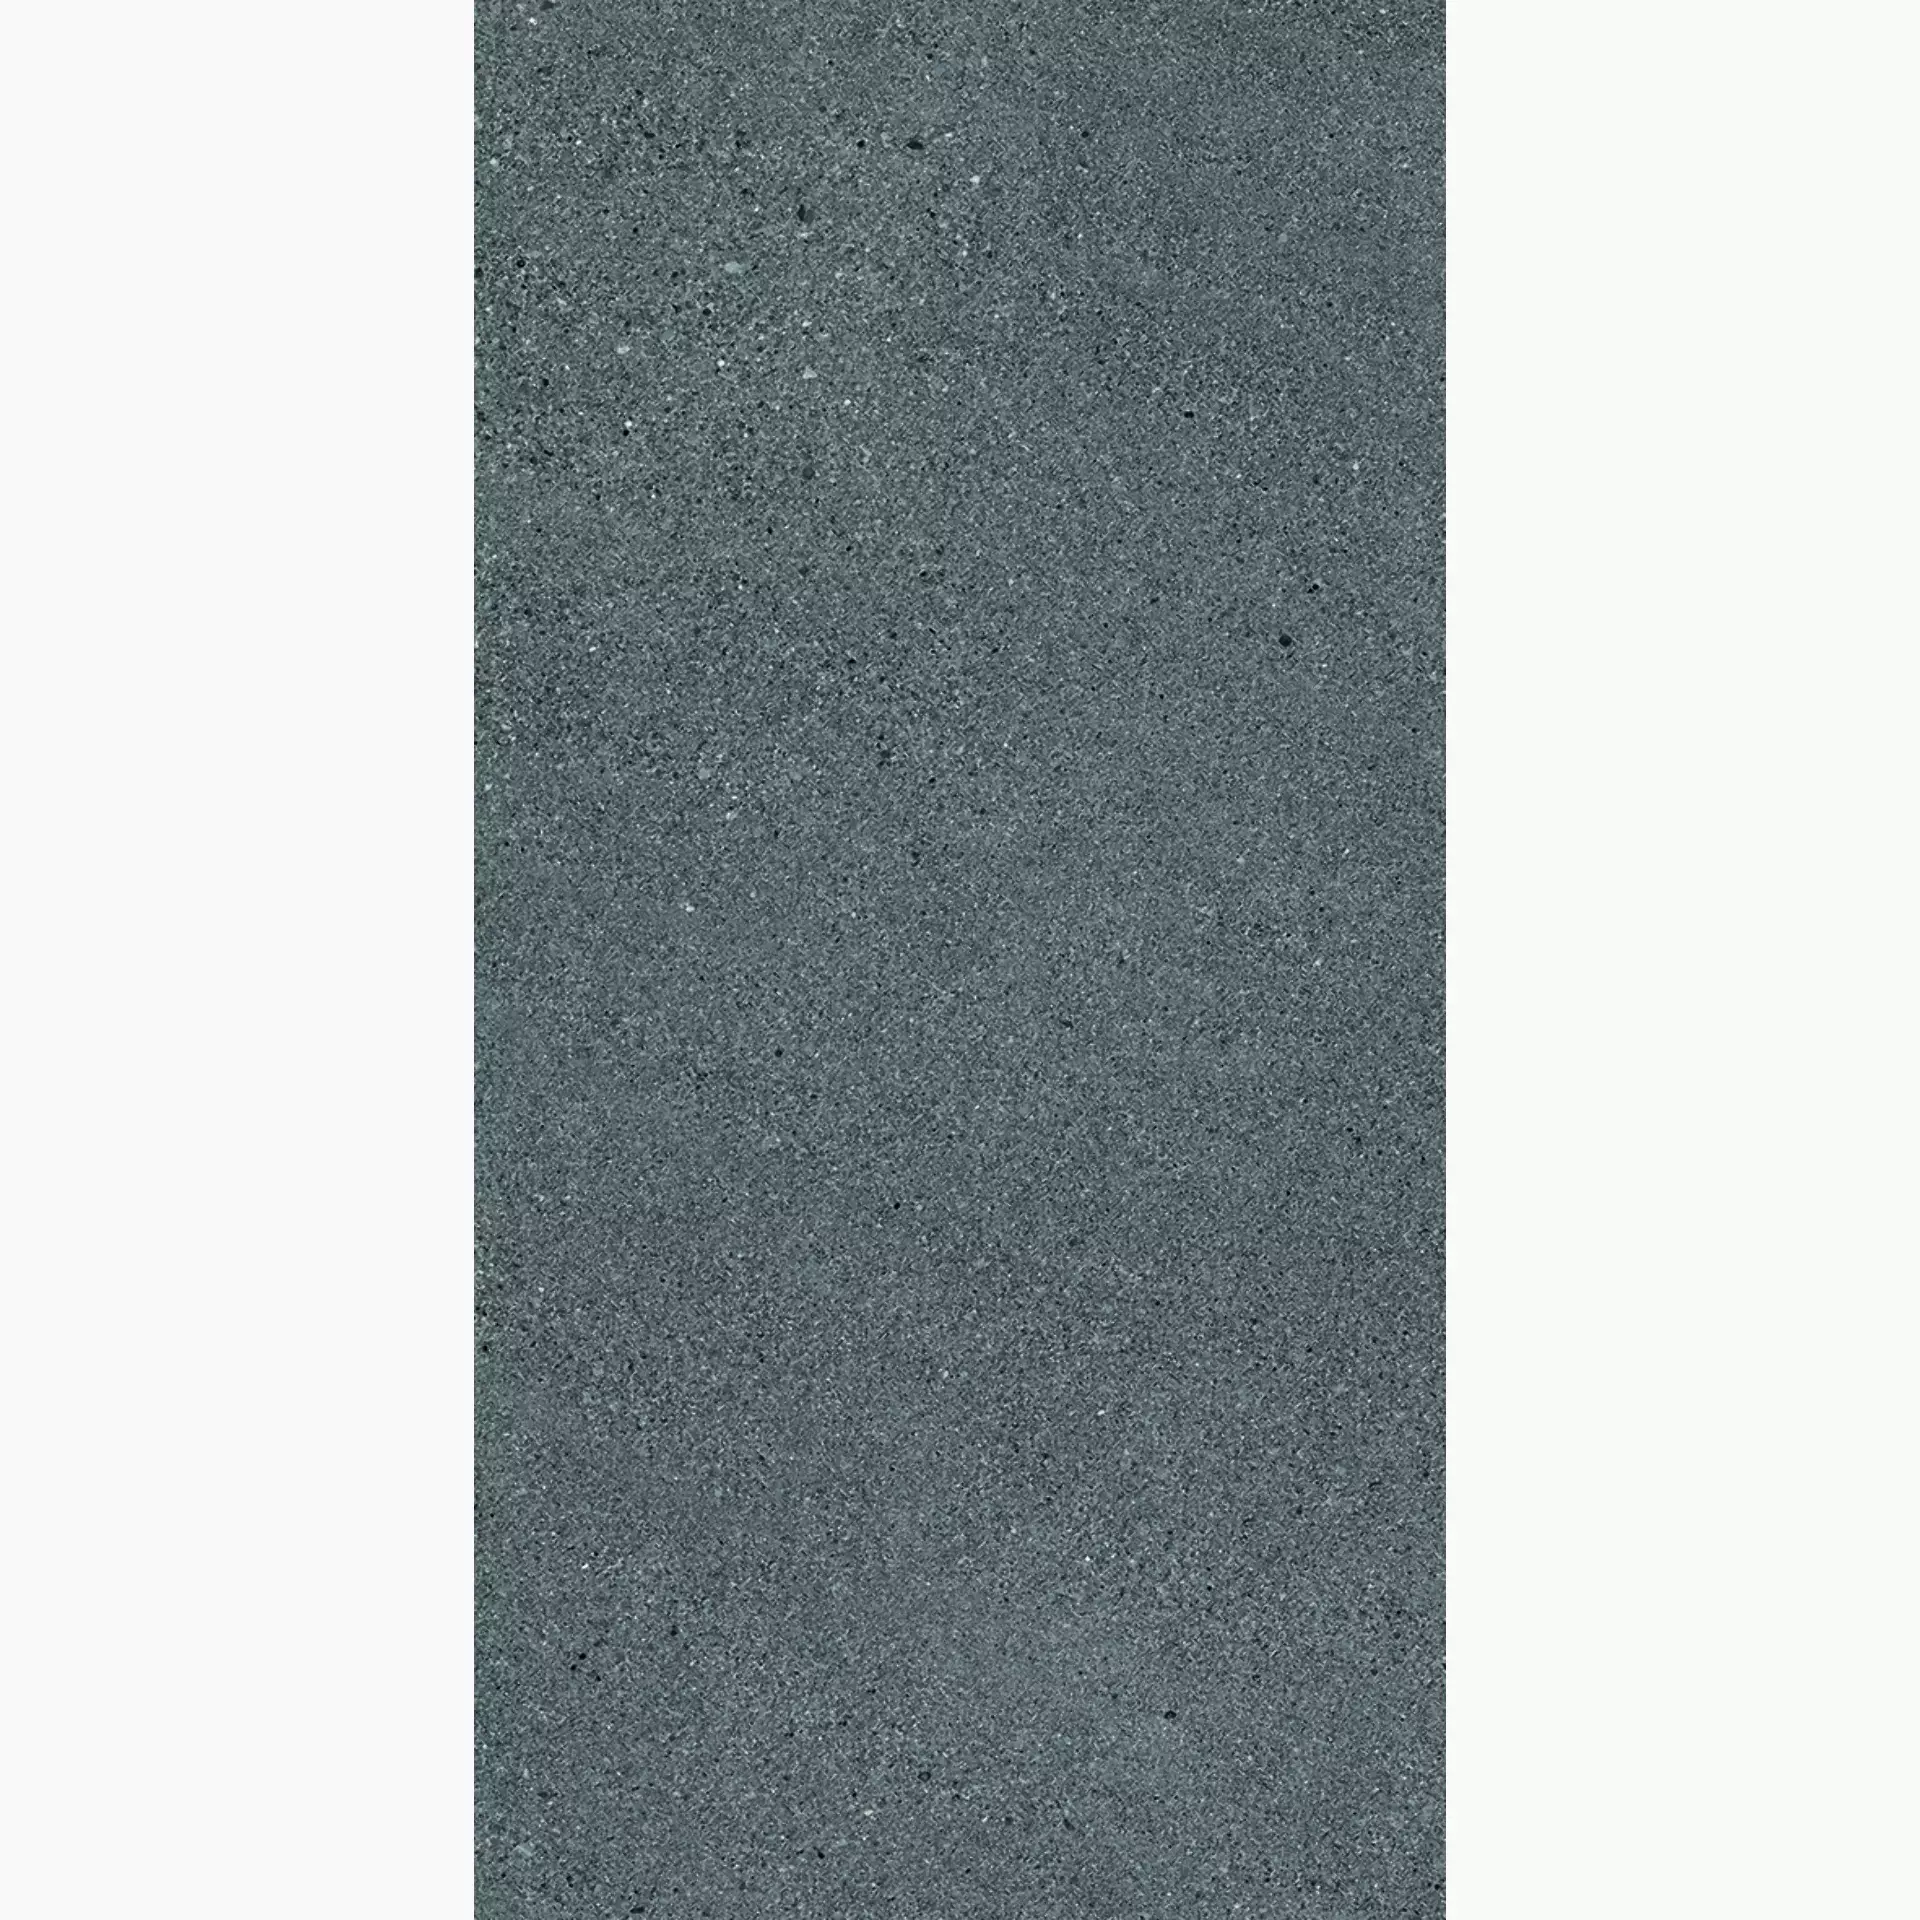 Ergon Grain Stone Fine Grain Dark Naturale E09C 60x120cm rectified 9,5mm